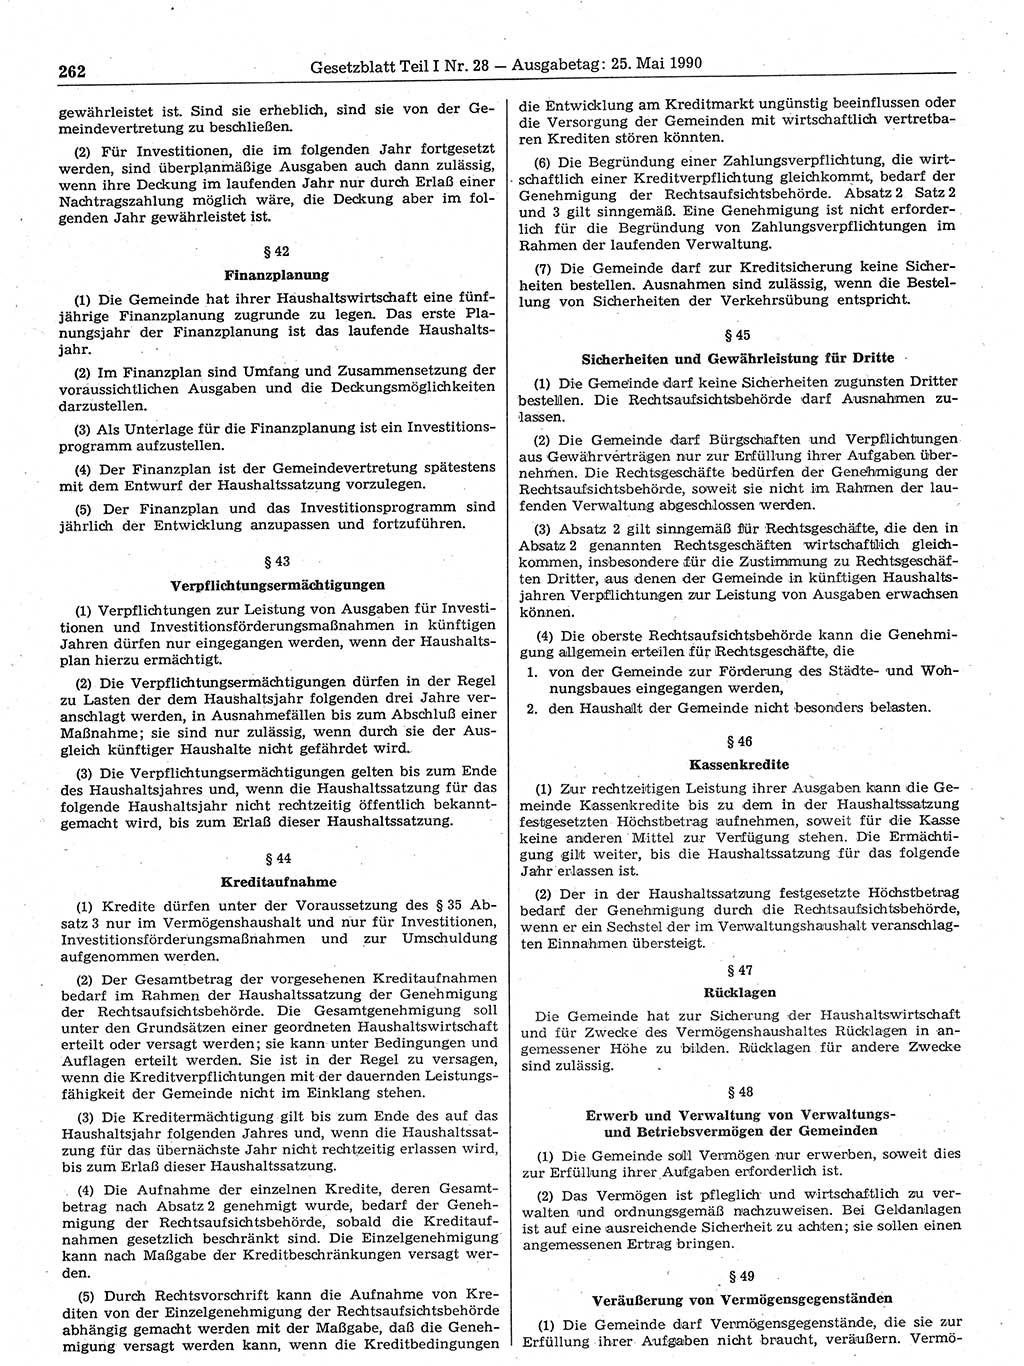 Gesetzblatt (GBl.) der Deutschen Demokratischen Republik (DDR) Teil Ⅰ 1990, Seite 262 (GBl. DDR Ⅰ 1990, S. 262)